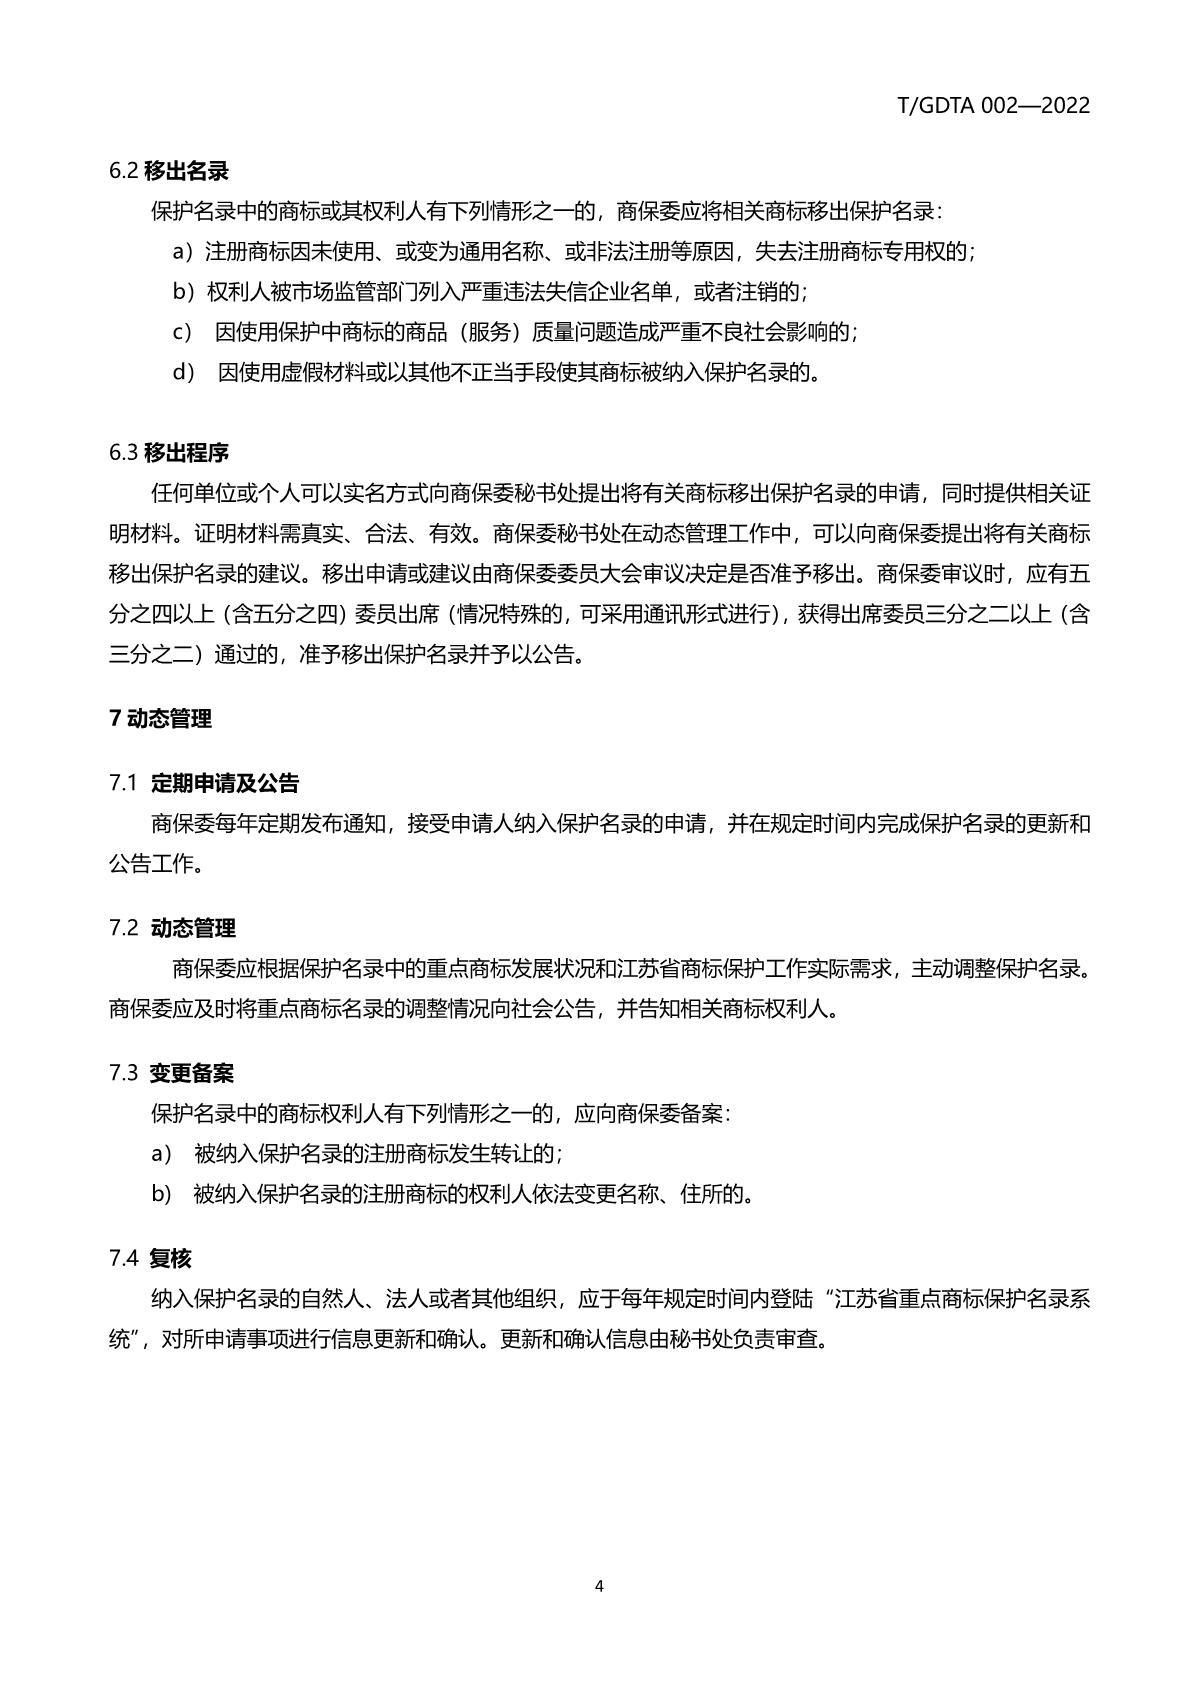 江苏省重点商标保护名录管理规范（征求意见稿）_7.JPG